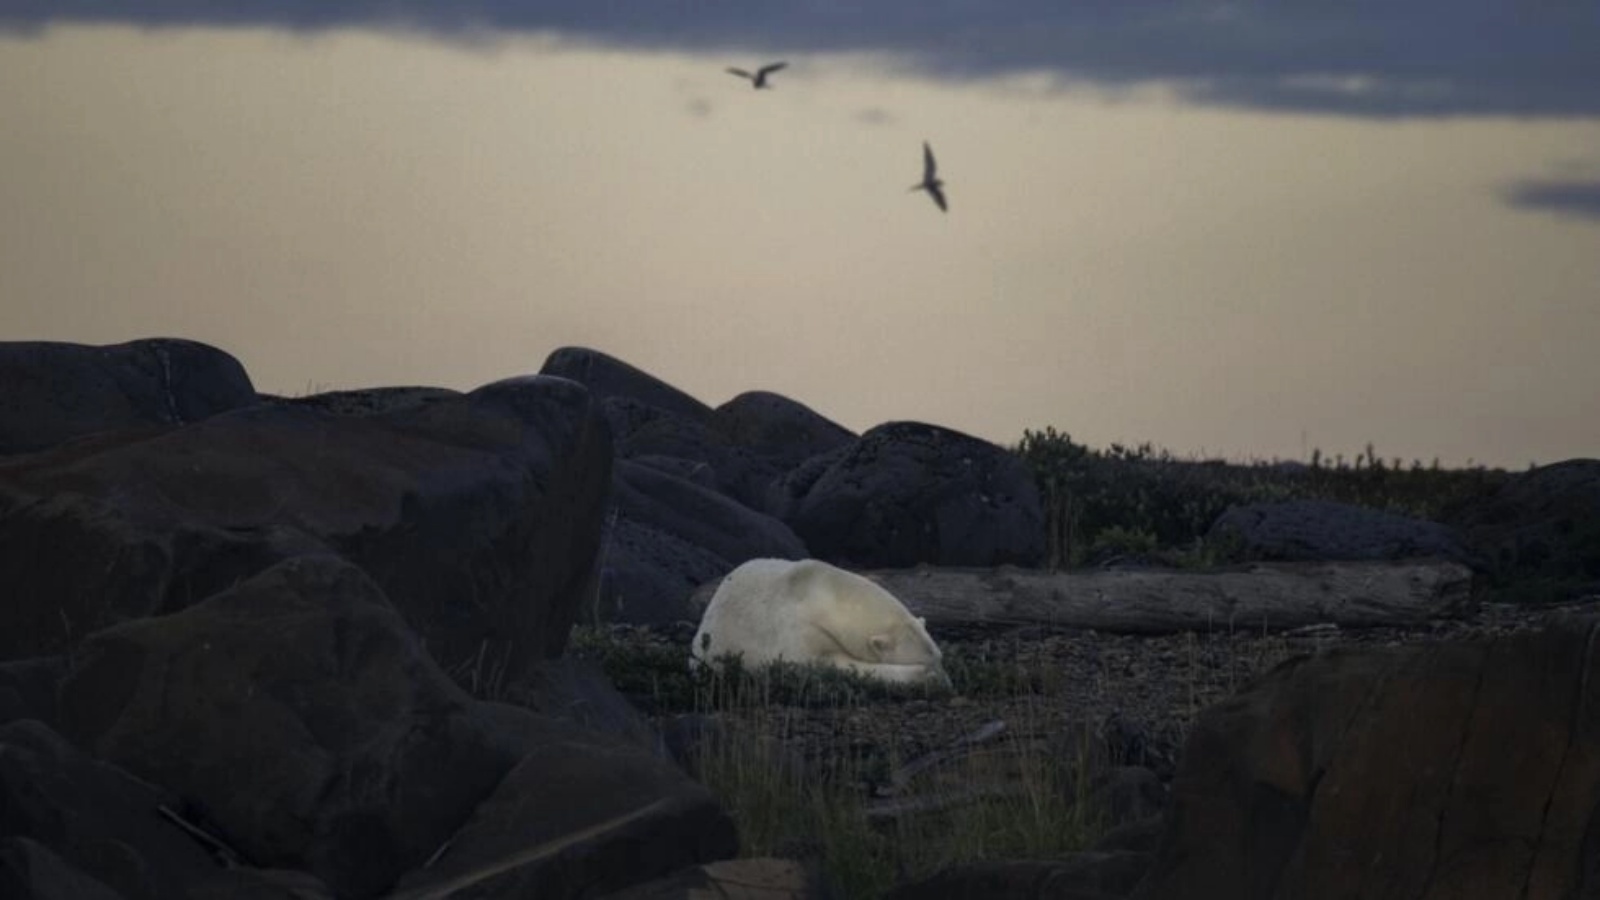 دب قطبي نائم في نهاية الليل على طول شاطئ خليج هدسون بالقرب من تشرشل، كندا